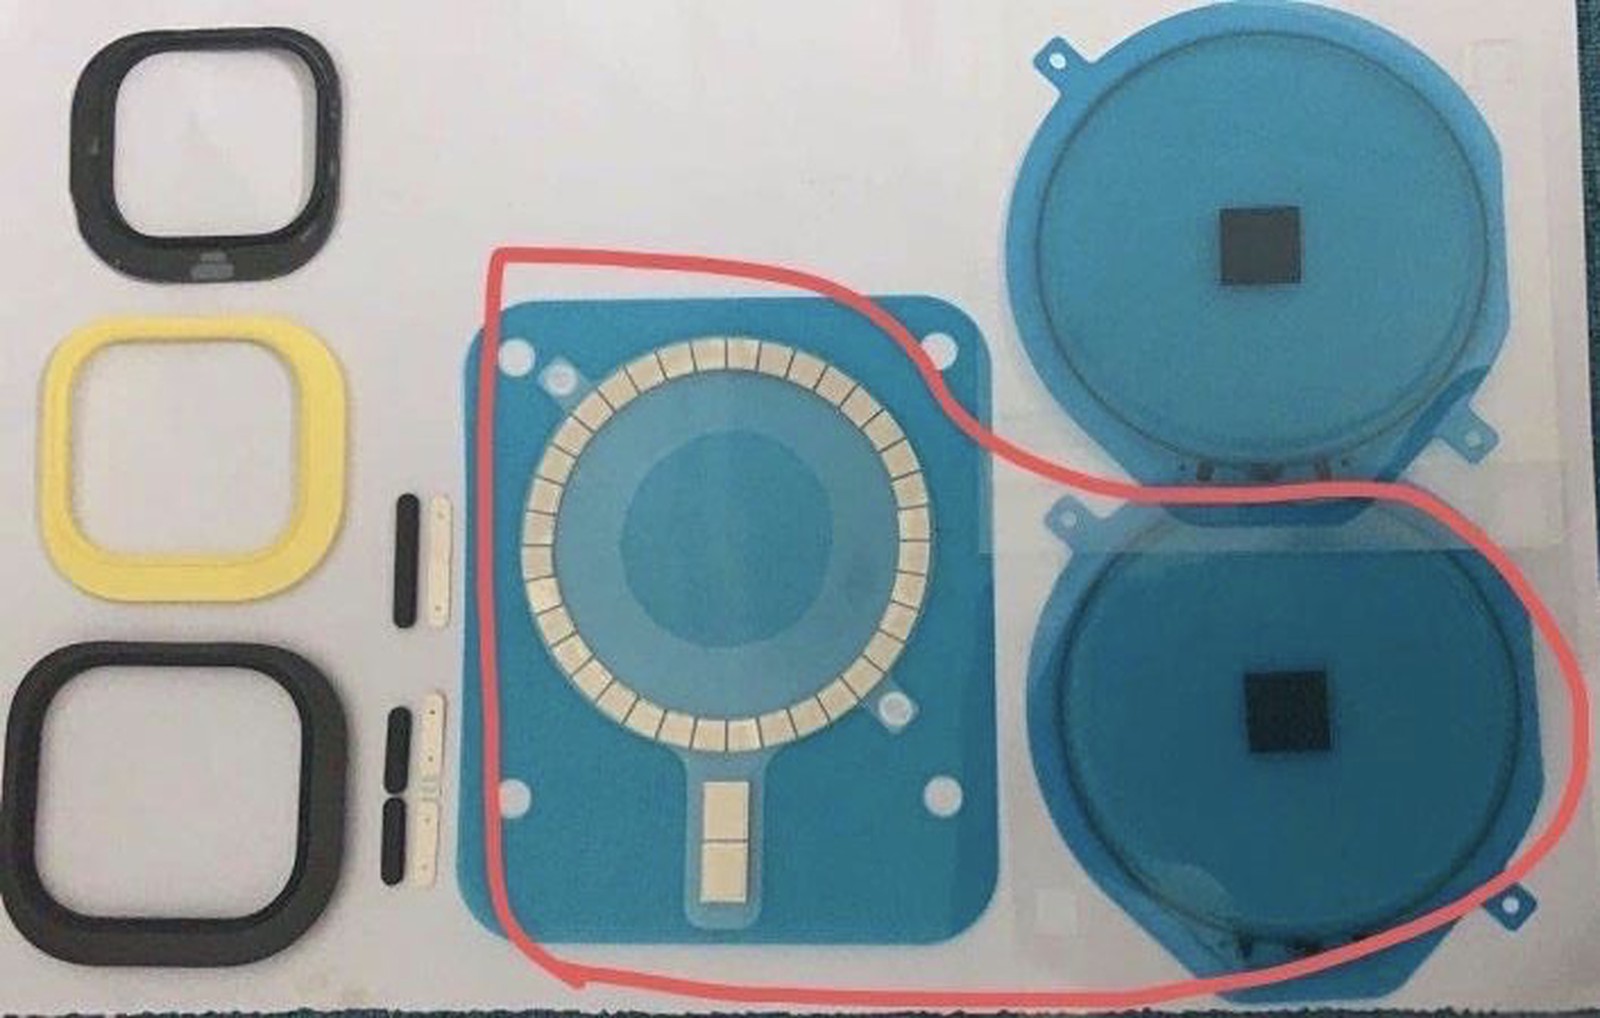 Gli iPhone 12 potrebbero avere un cerchio di magneti nello chassis